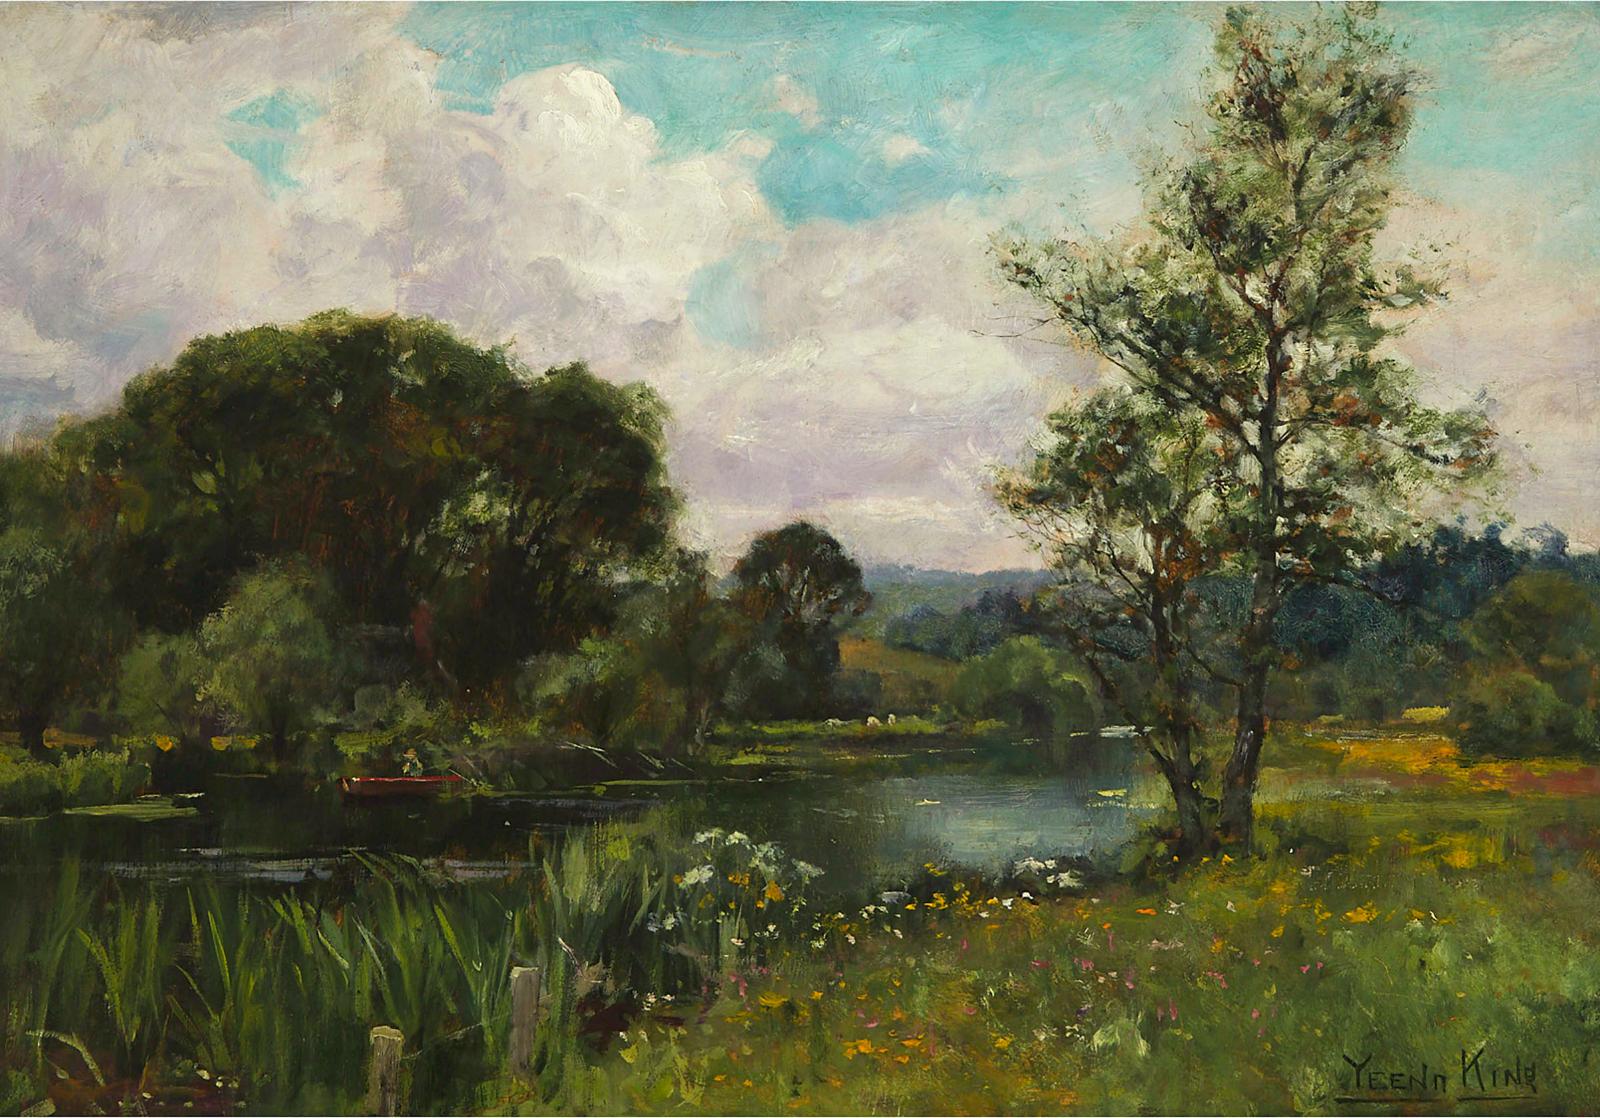 Henry John Yeend King (1855-1924) - Fishing On A Tranquil River